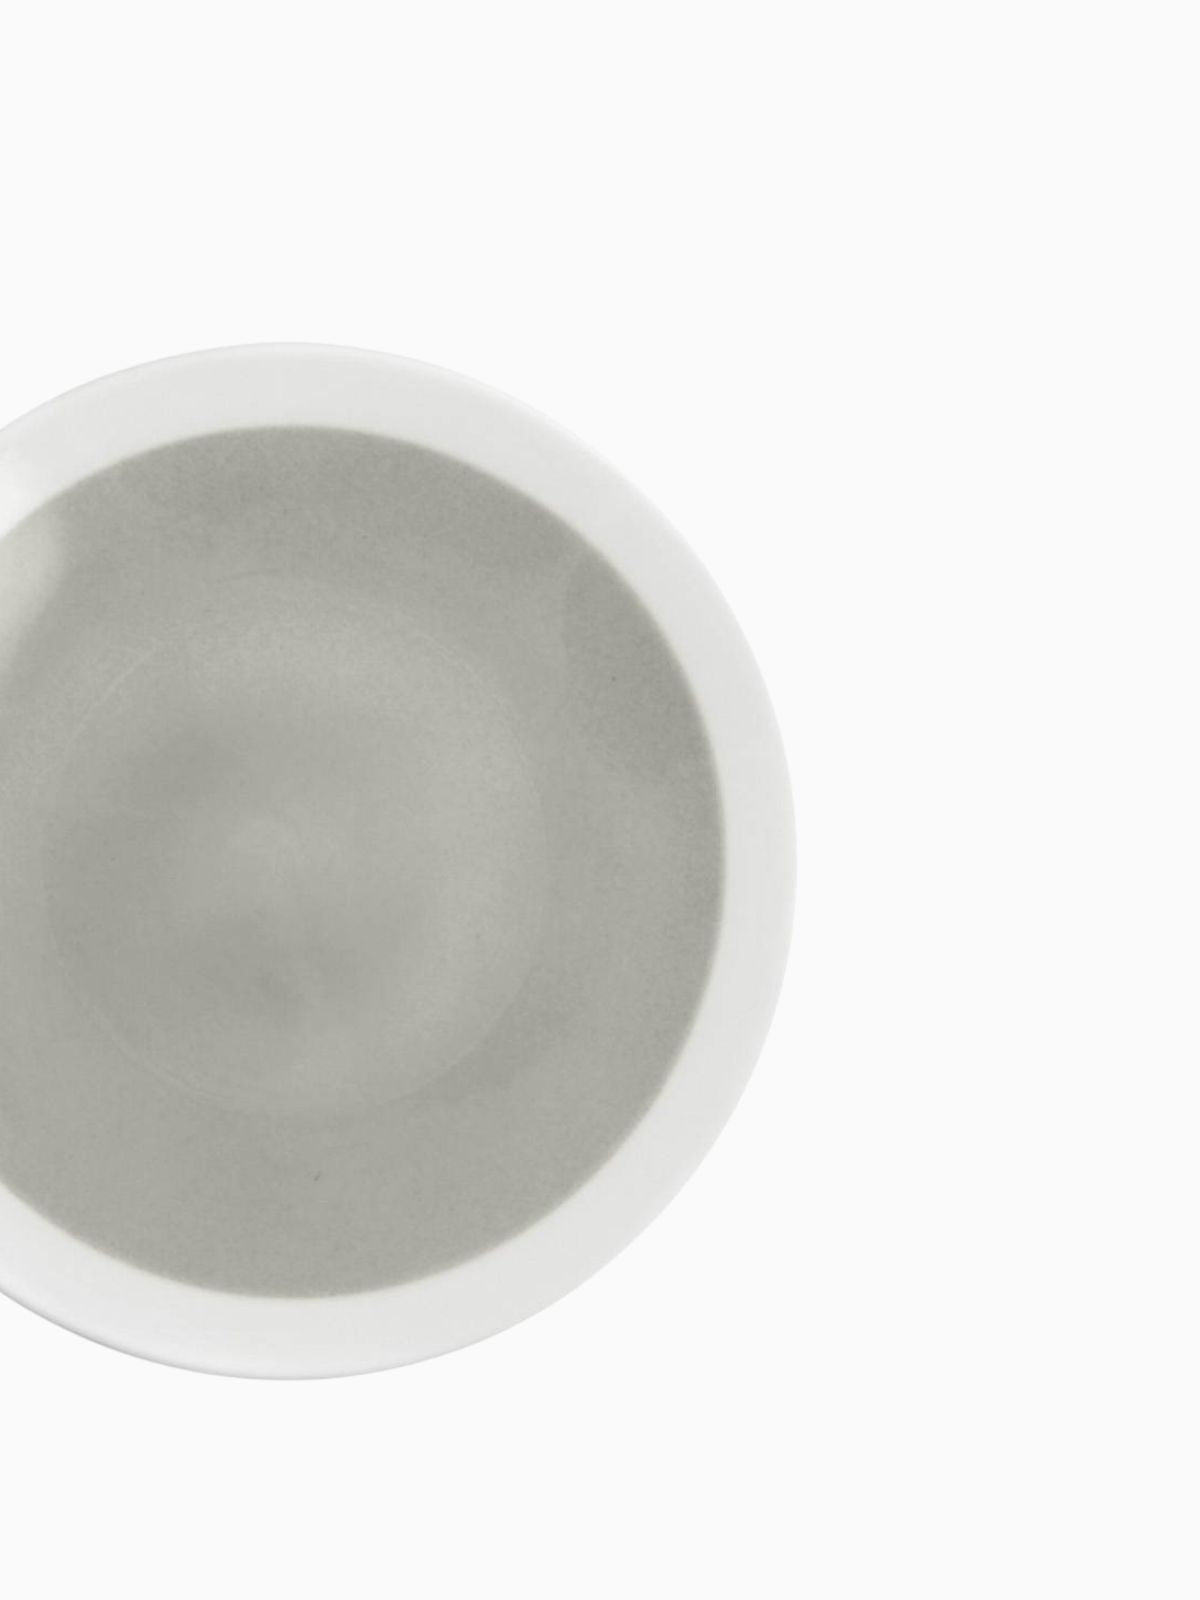 Set 6 piatti piani Soleil in earthenware bianco e grigio 28 cm.-3